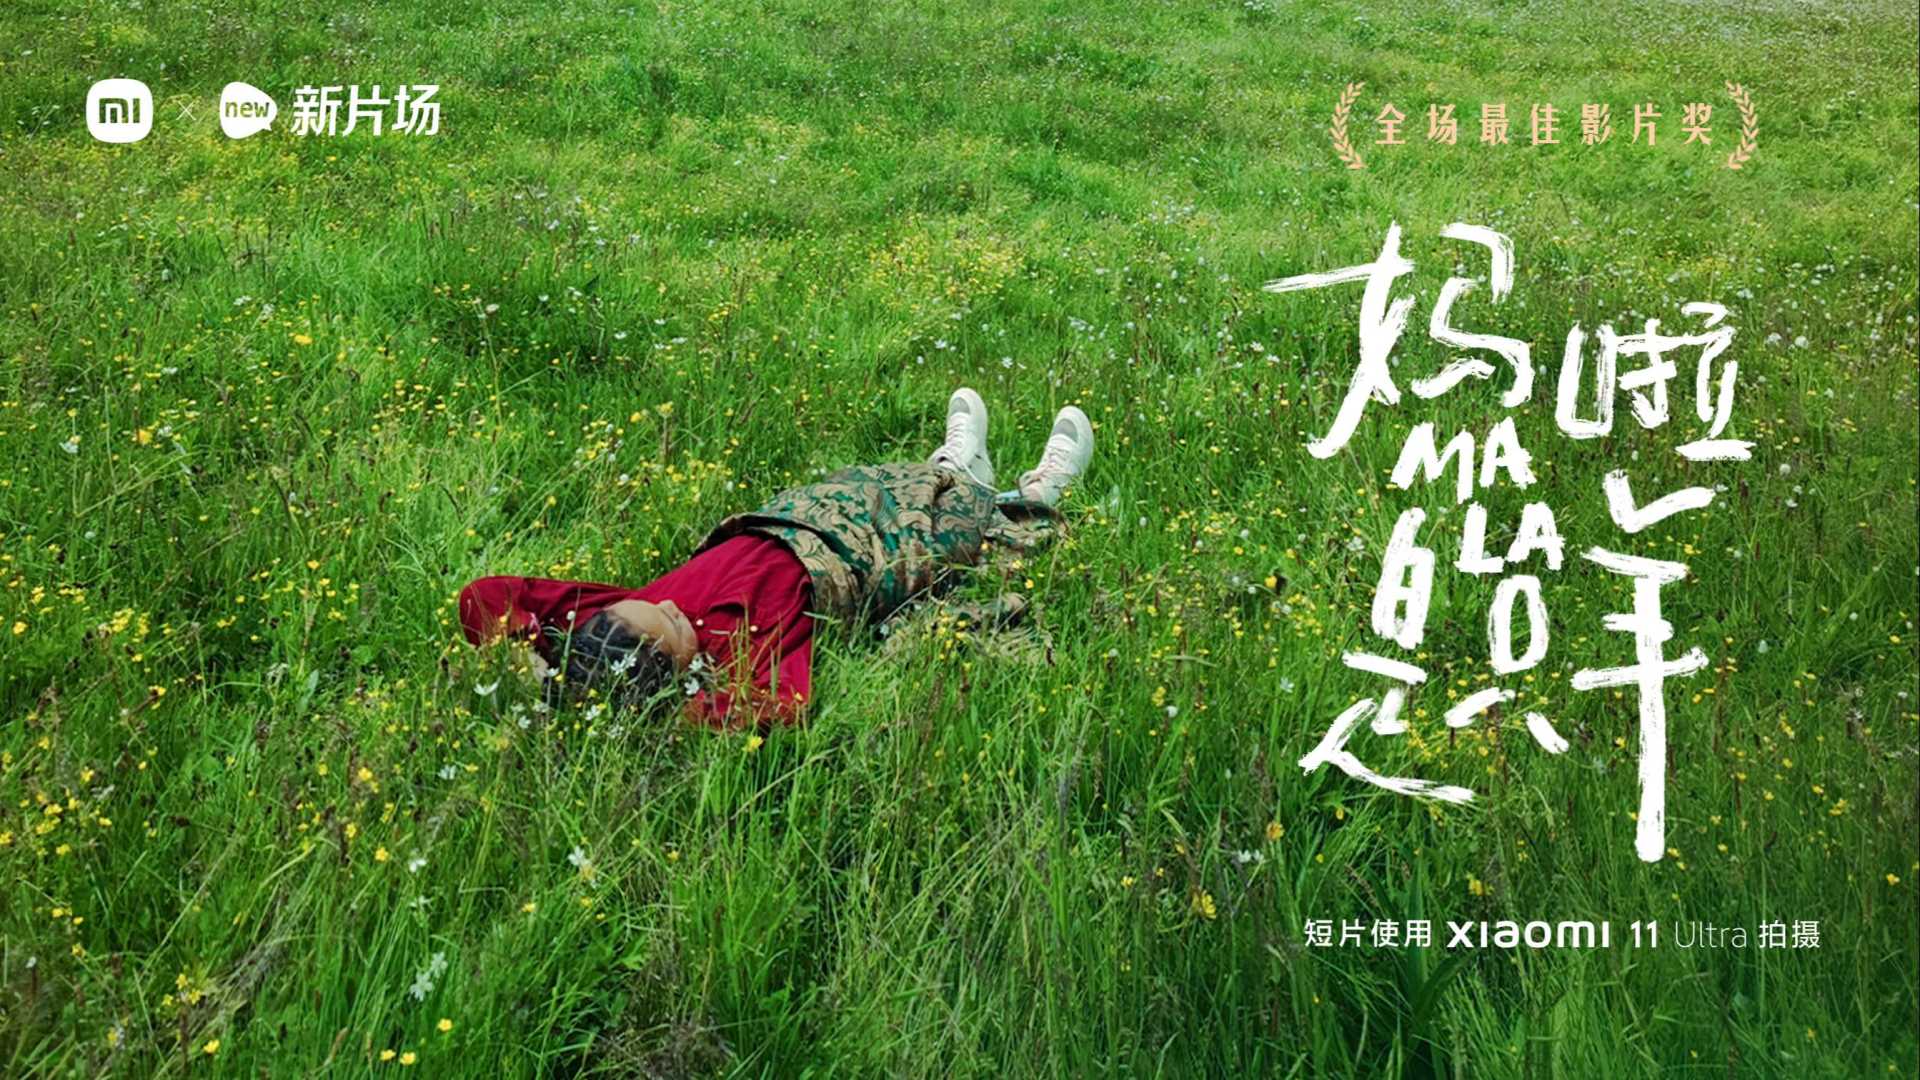 第三届中国电影金鸡奖手机电影计划评审团特别推荐奖-《妈啦是只羊》